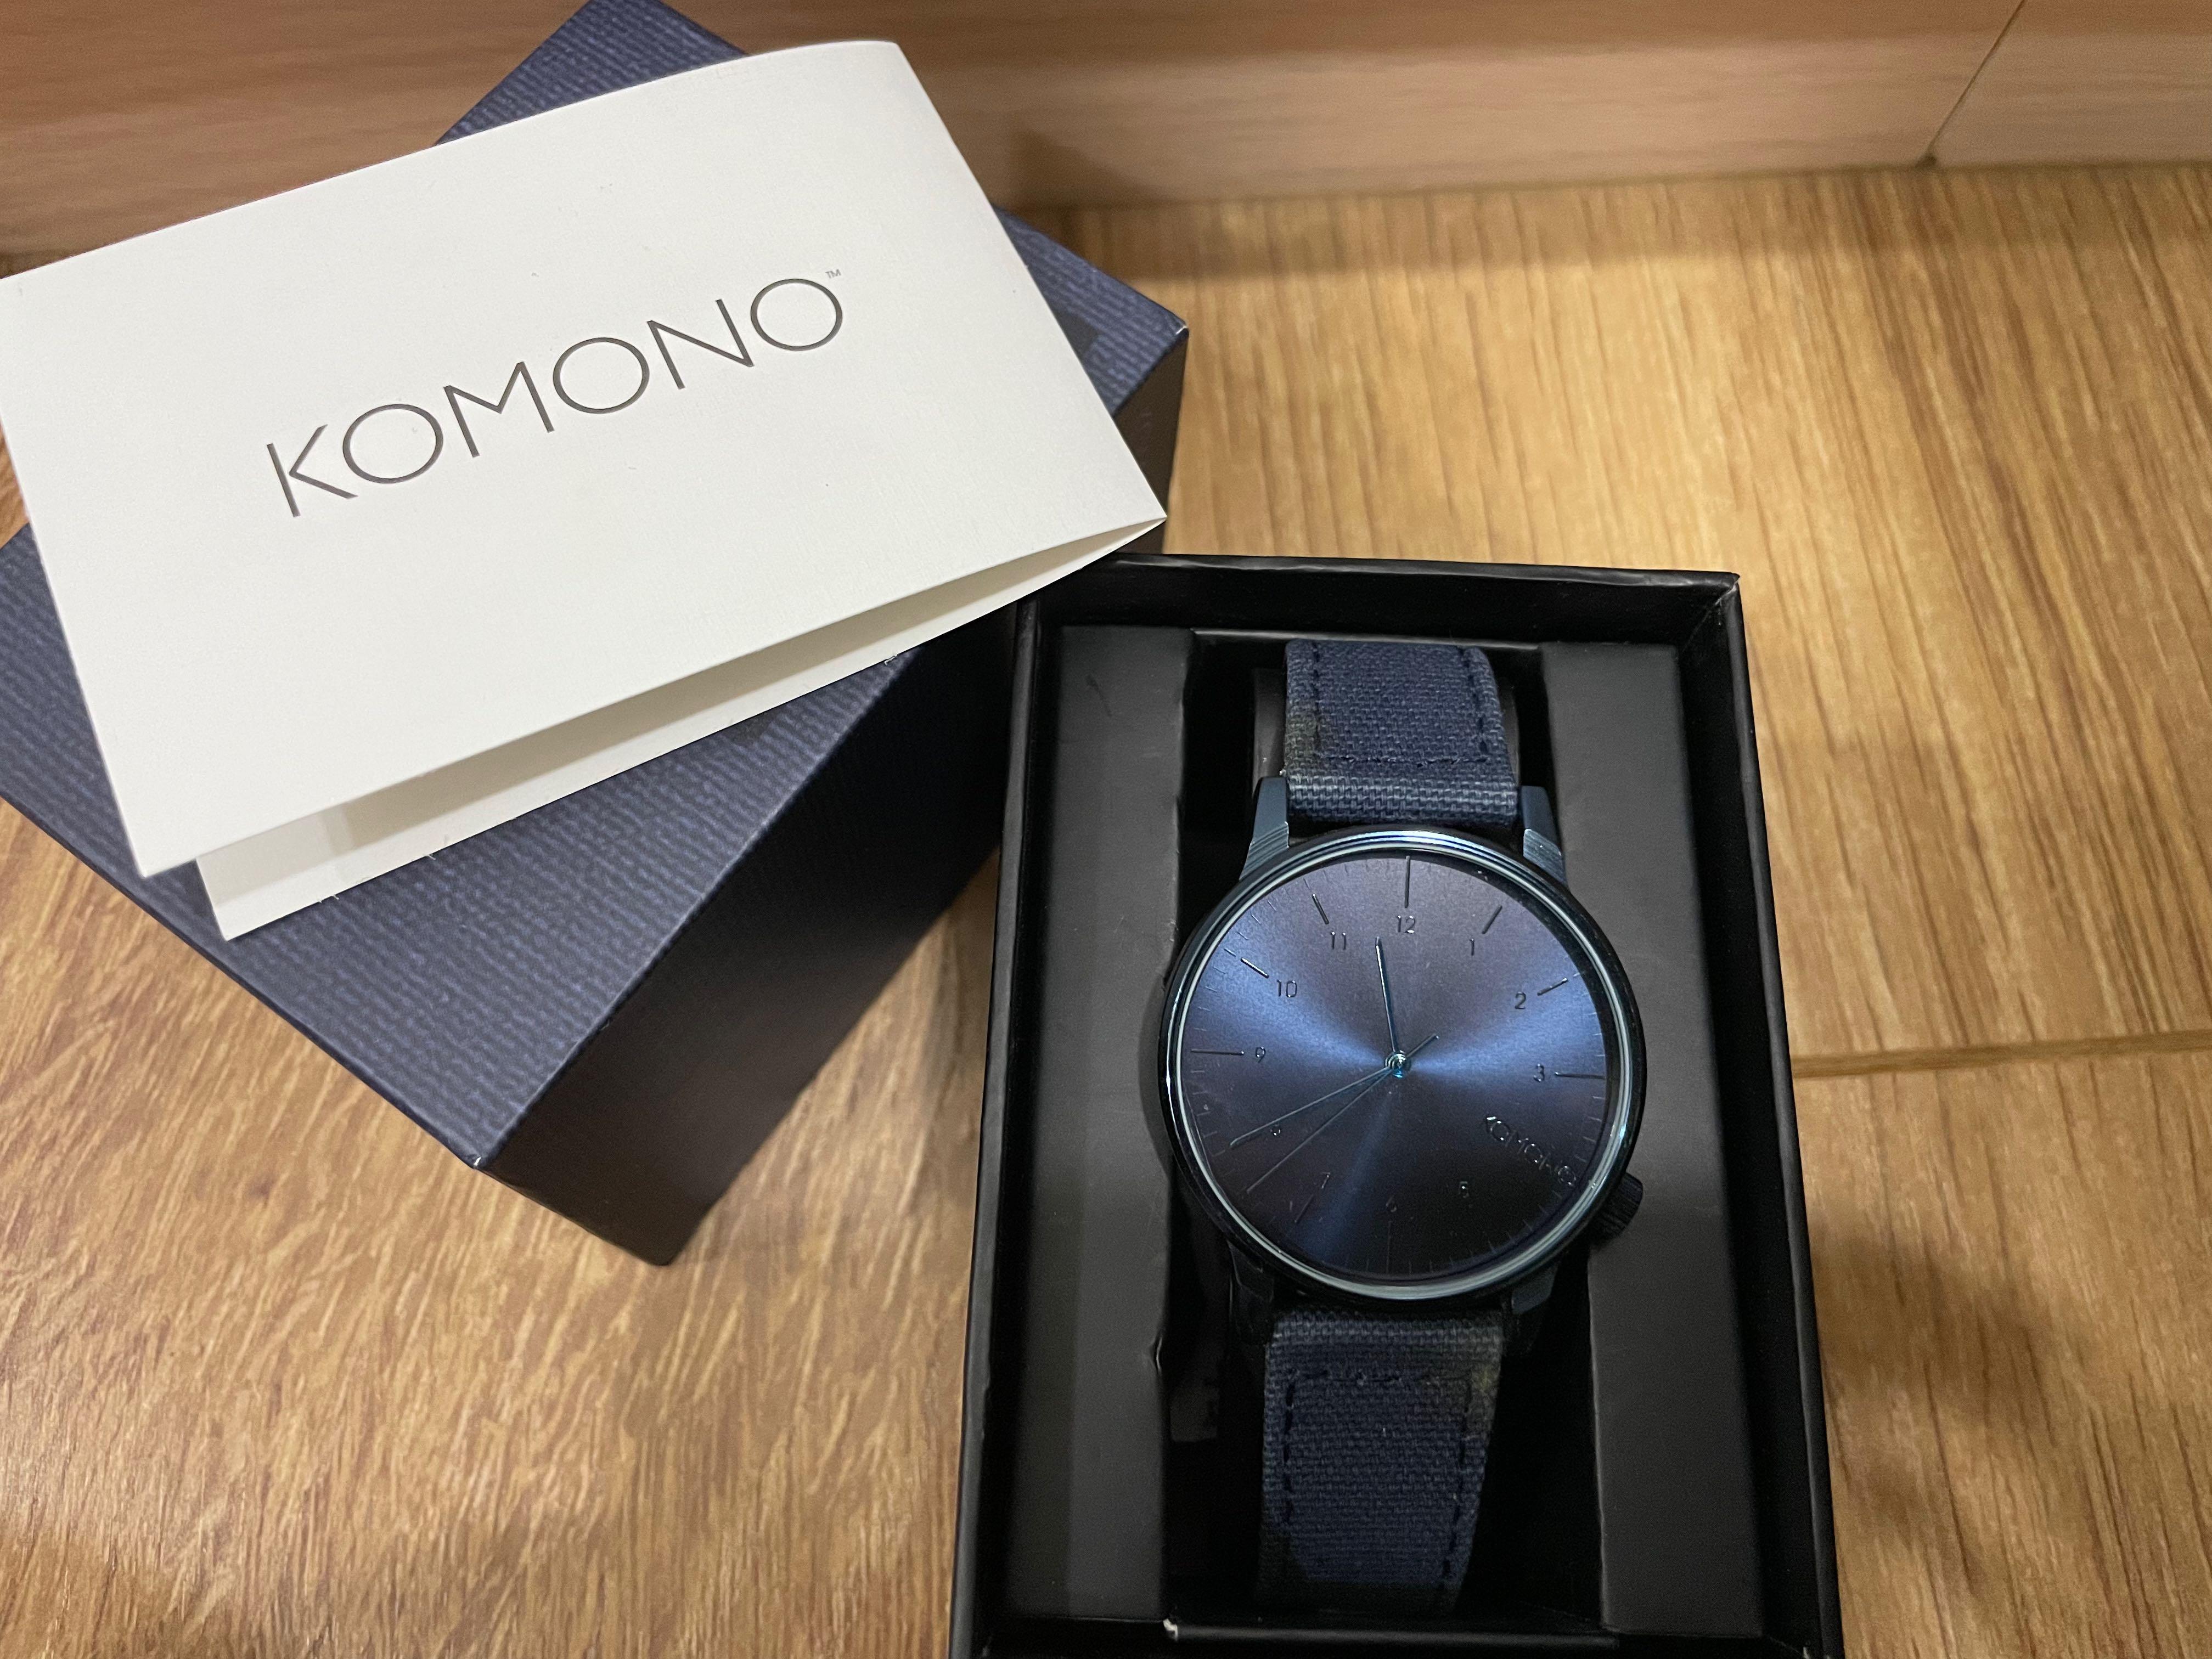 KOMONO Winston Regal 腕錶-海洋藍/41mm, 手機及配件, 智慧穿戴裝置及